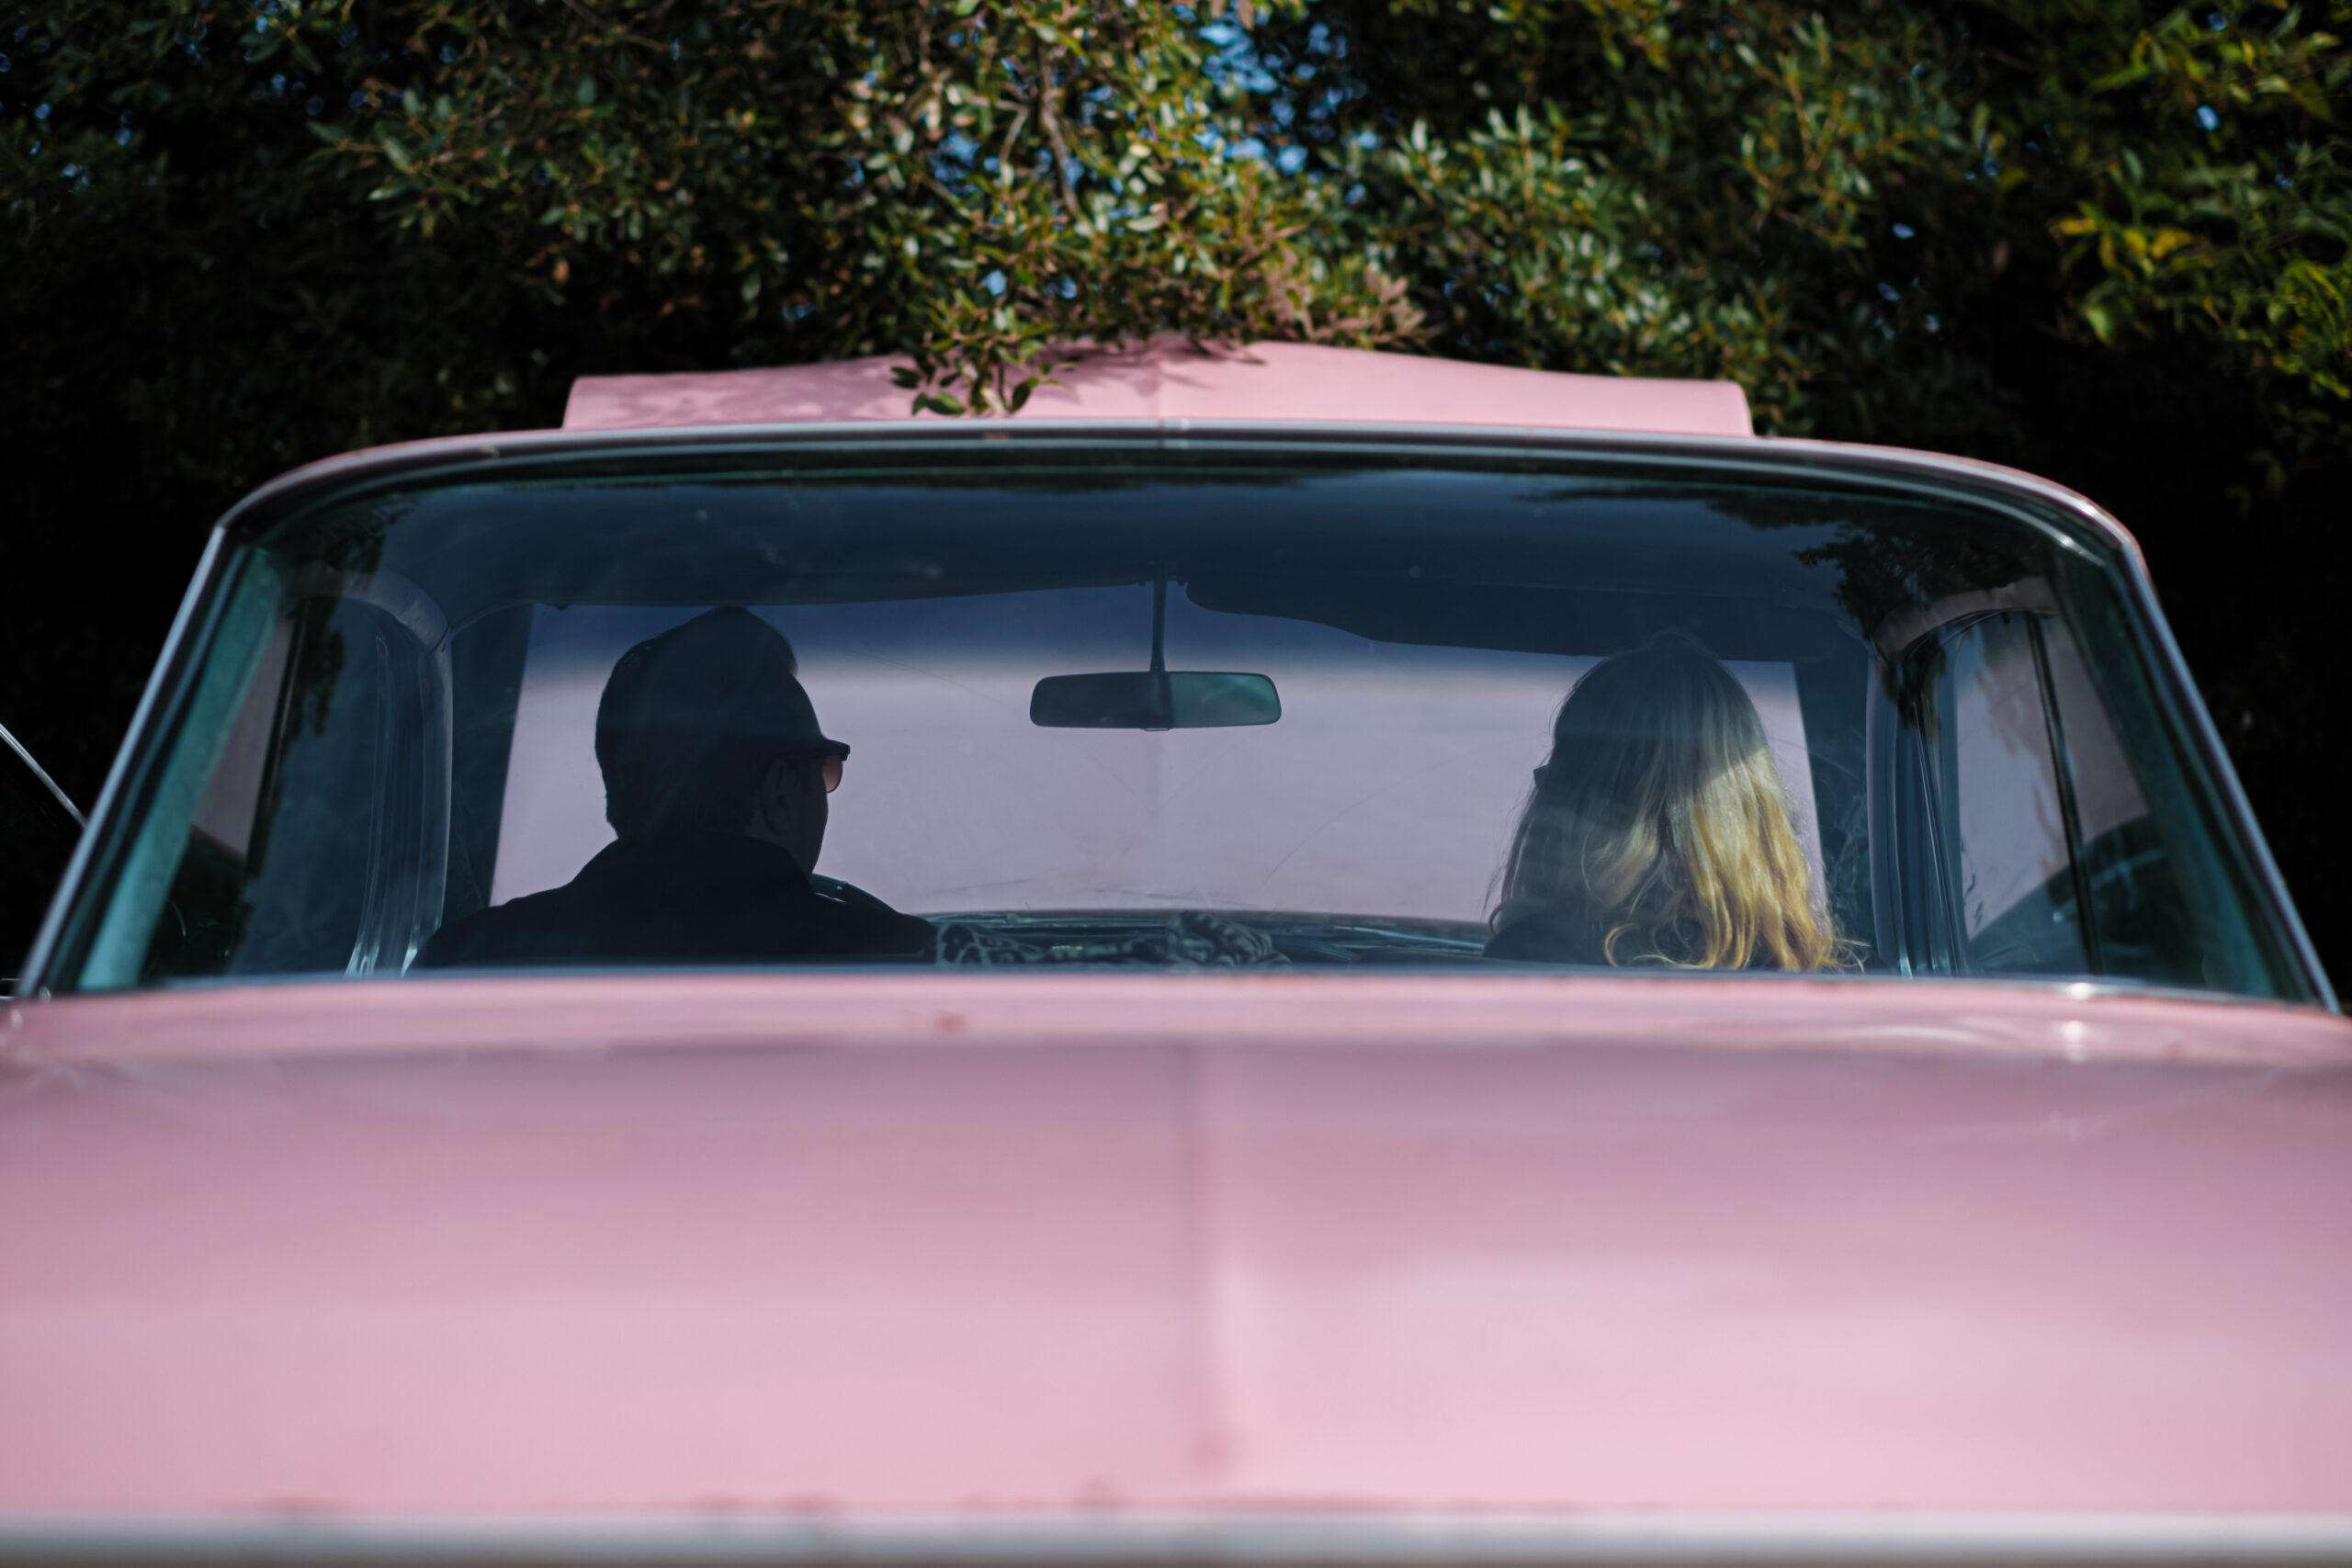 Matt Hall photographs pink car